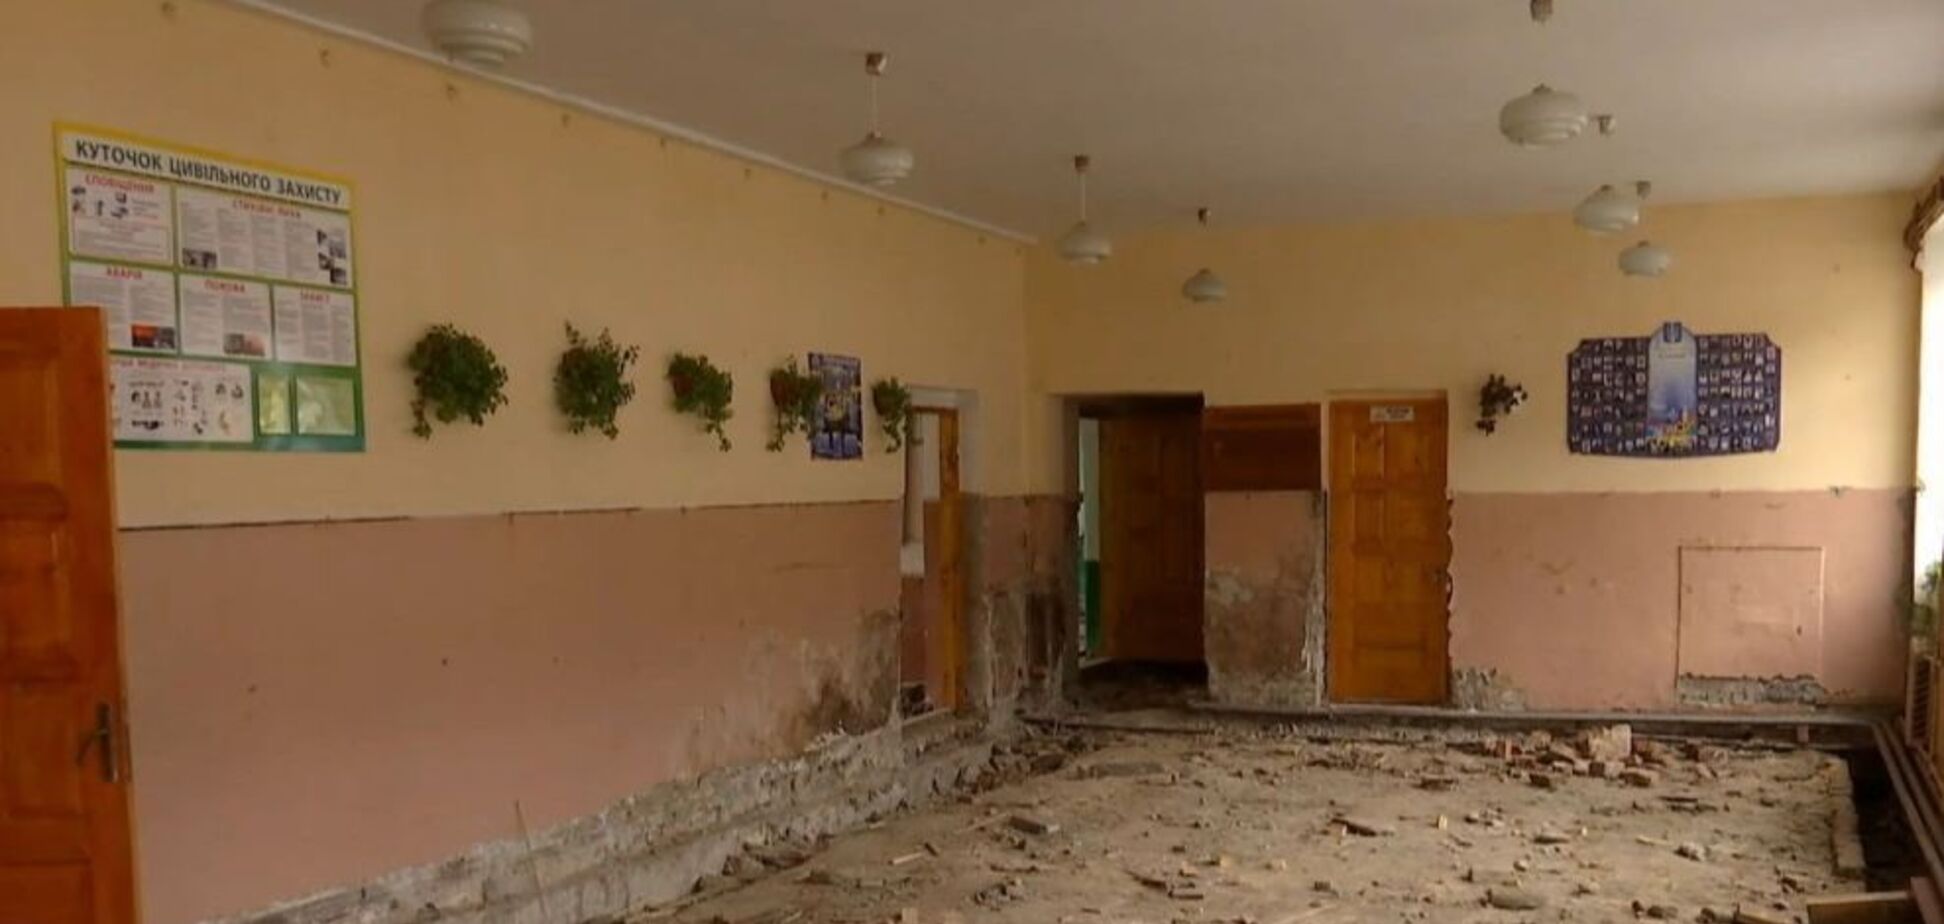 Грибок, сорванный пол и голодные дети: на Прикарпатье возник скандал из-за аварийной школы